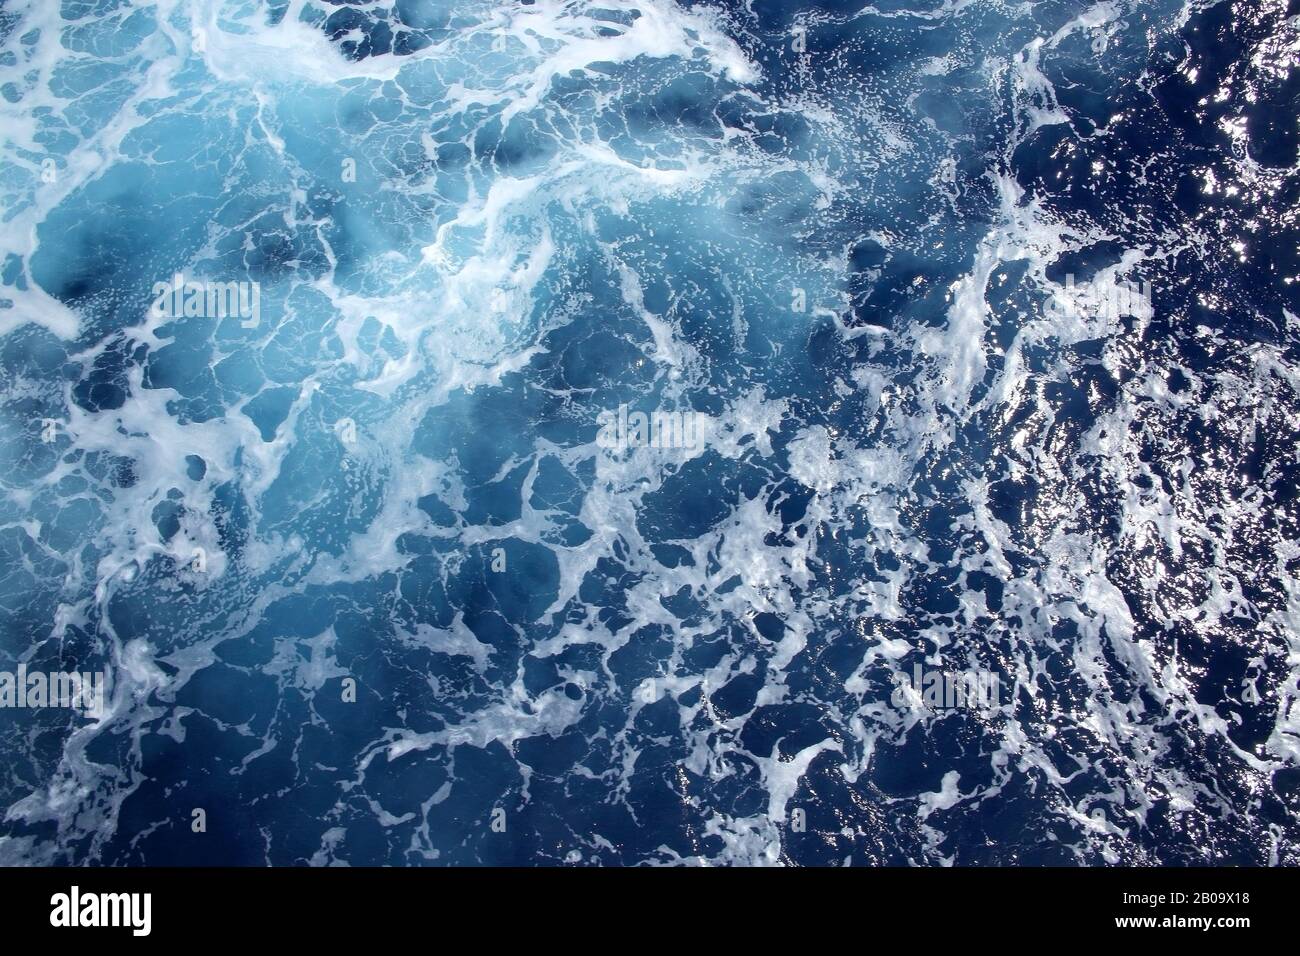 El océano con oleaje y ondas de espuma en la parte superior, el Atlántico. Foto de stock